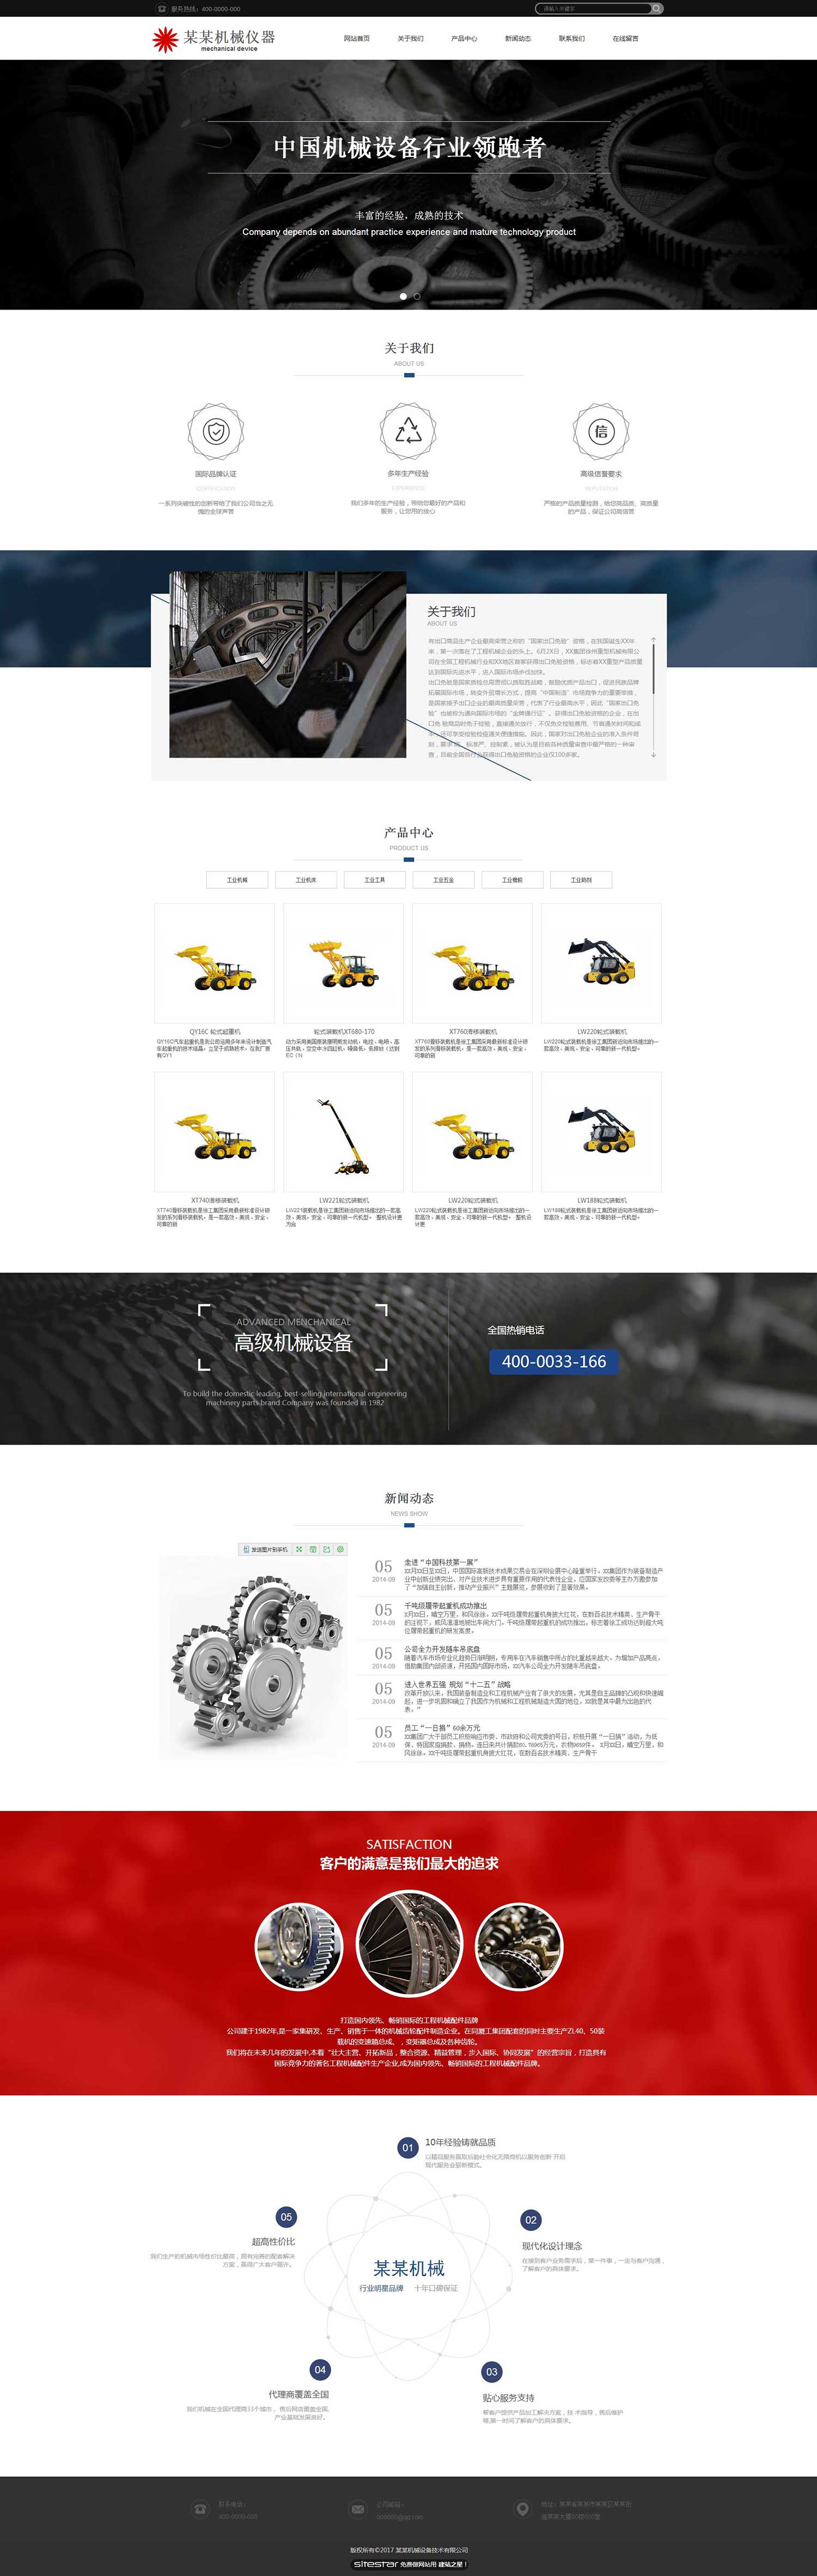 机械、工业制品网站模板-industrial-1354395